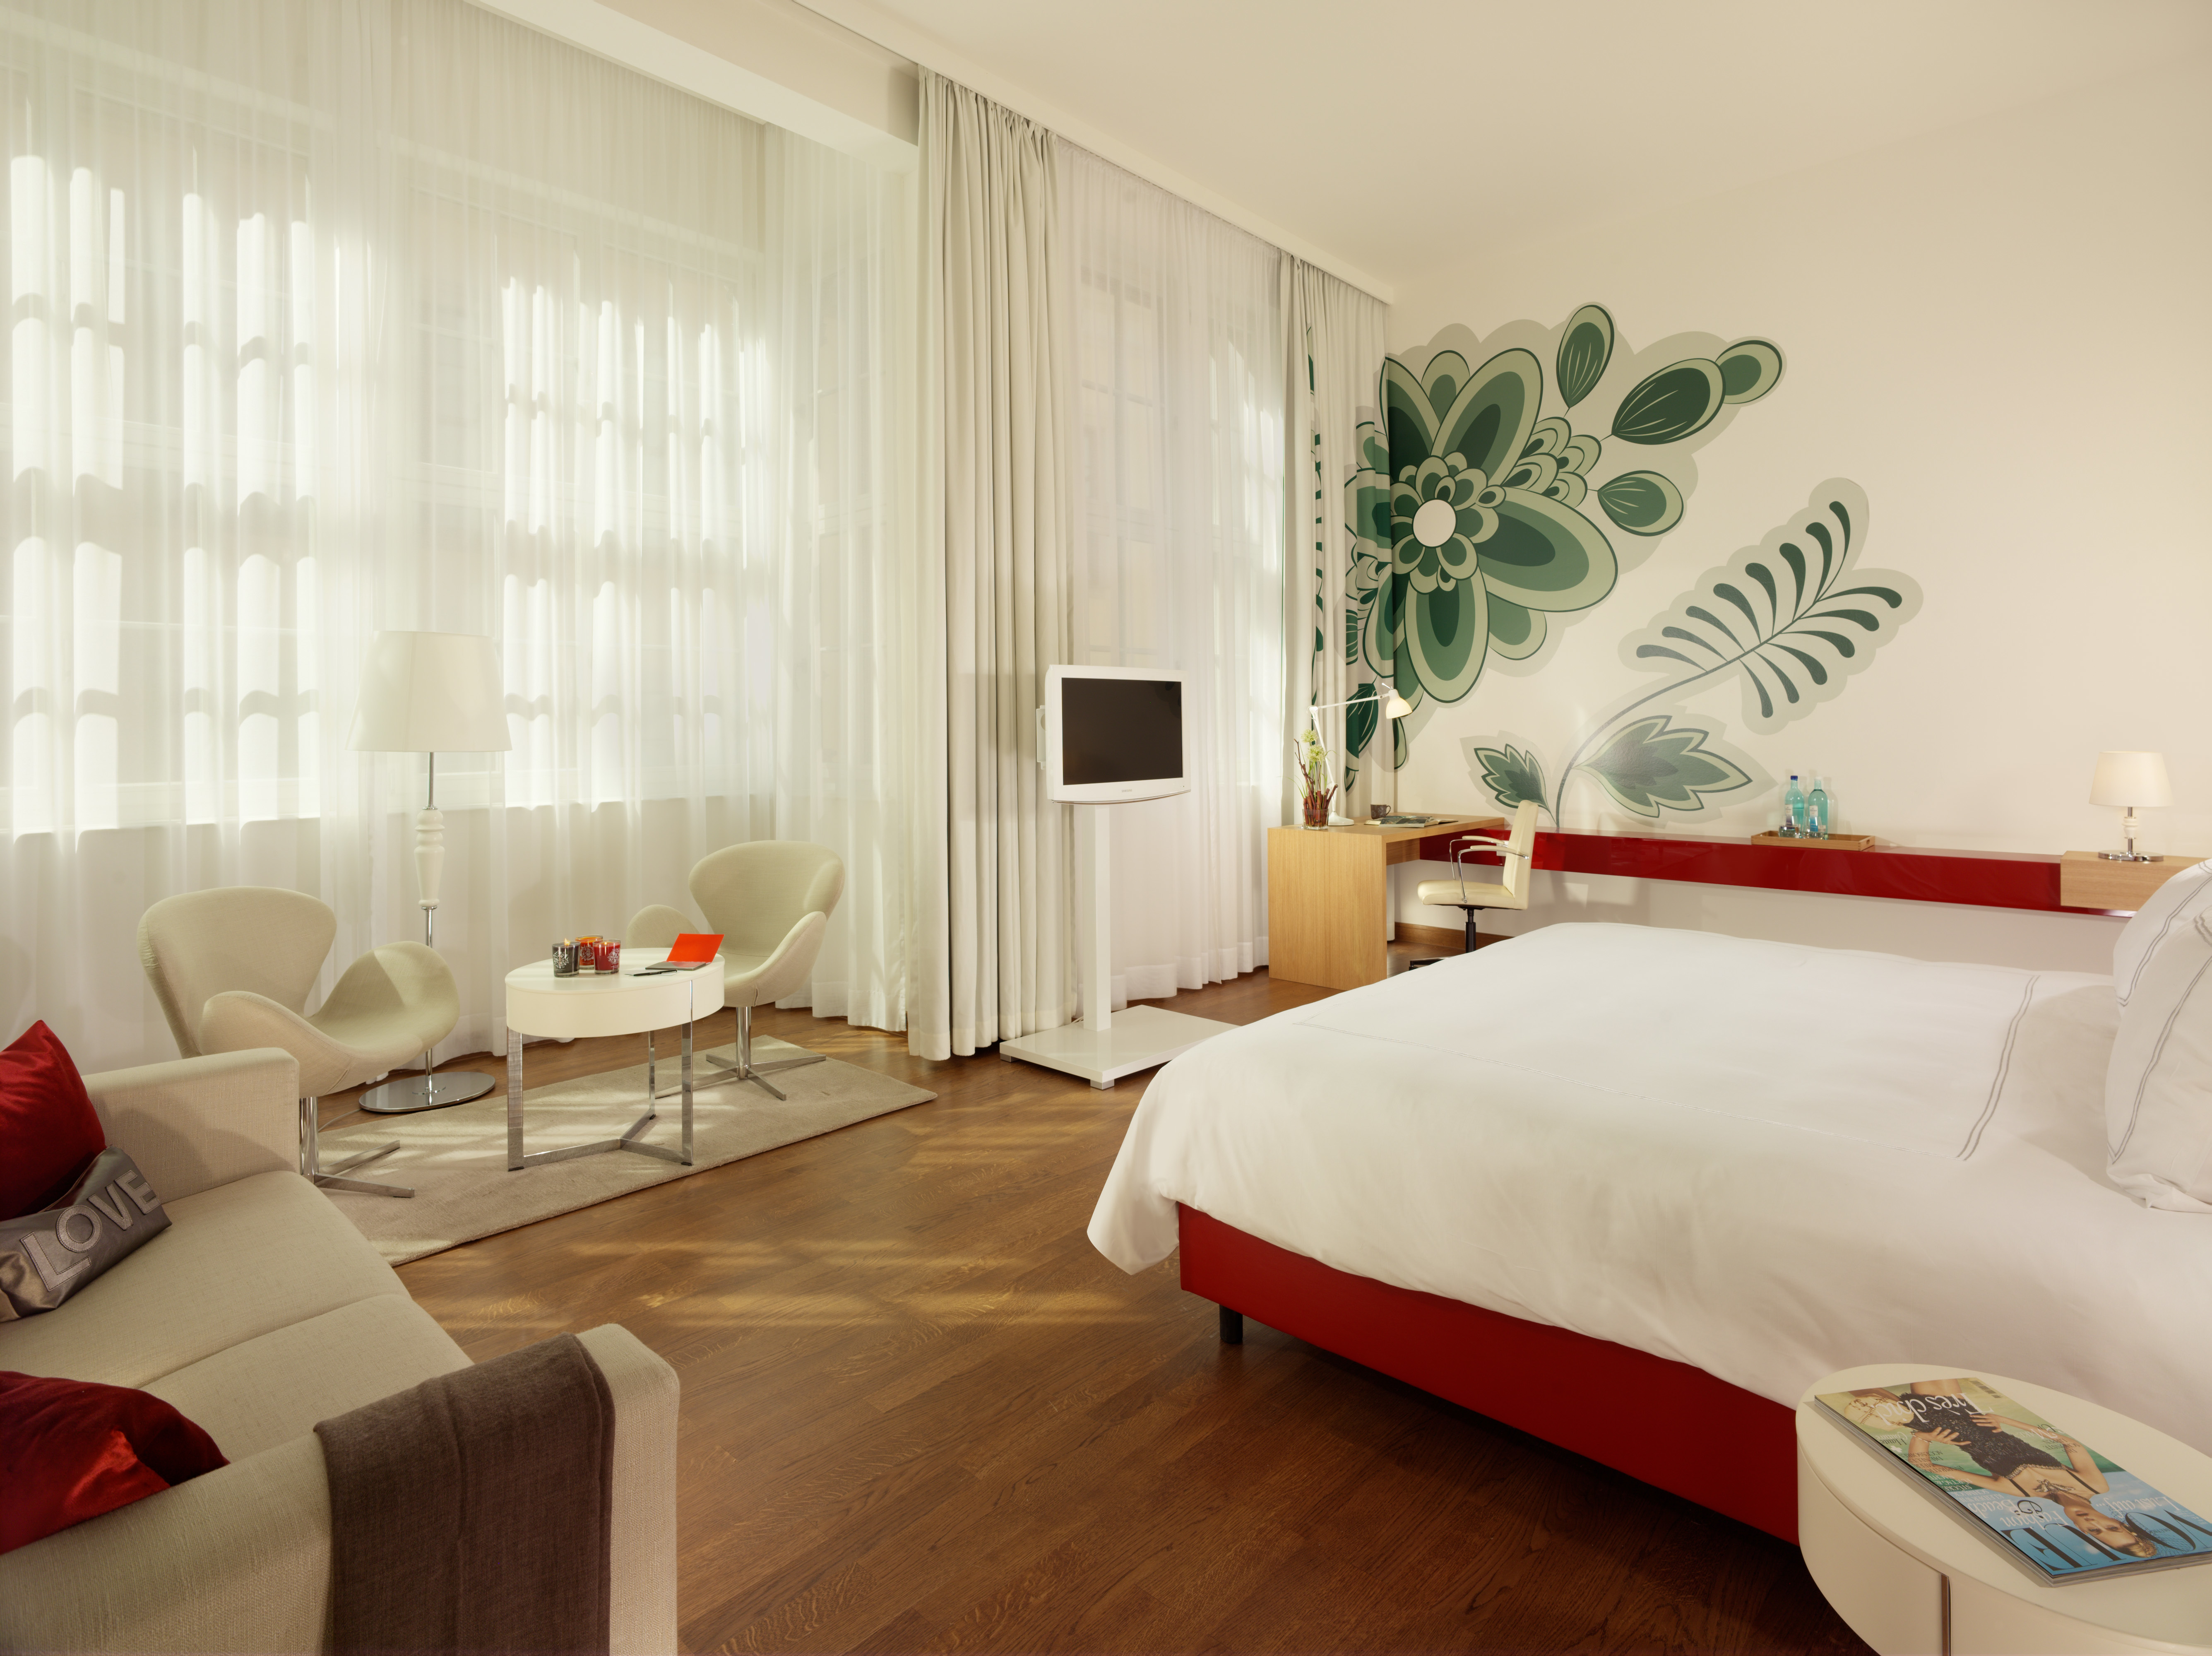 h-hotels_zimmer-grand-room-02-hyperion-hotel-dresden-am-schloss_Original (kommerz. Nutzung) _18-05-2018-100255.jpg